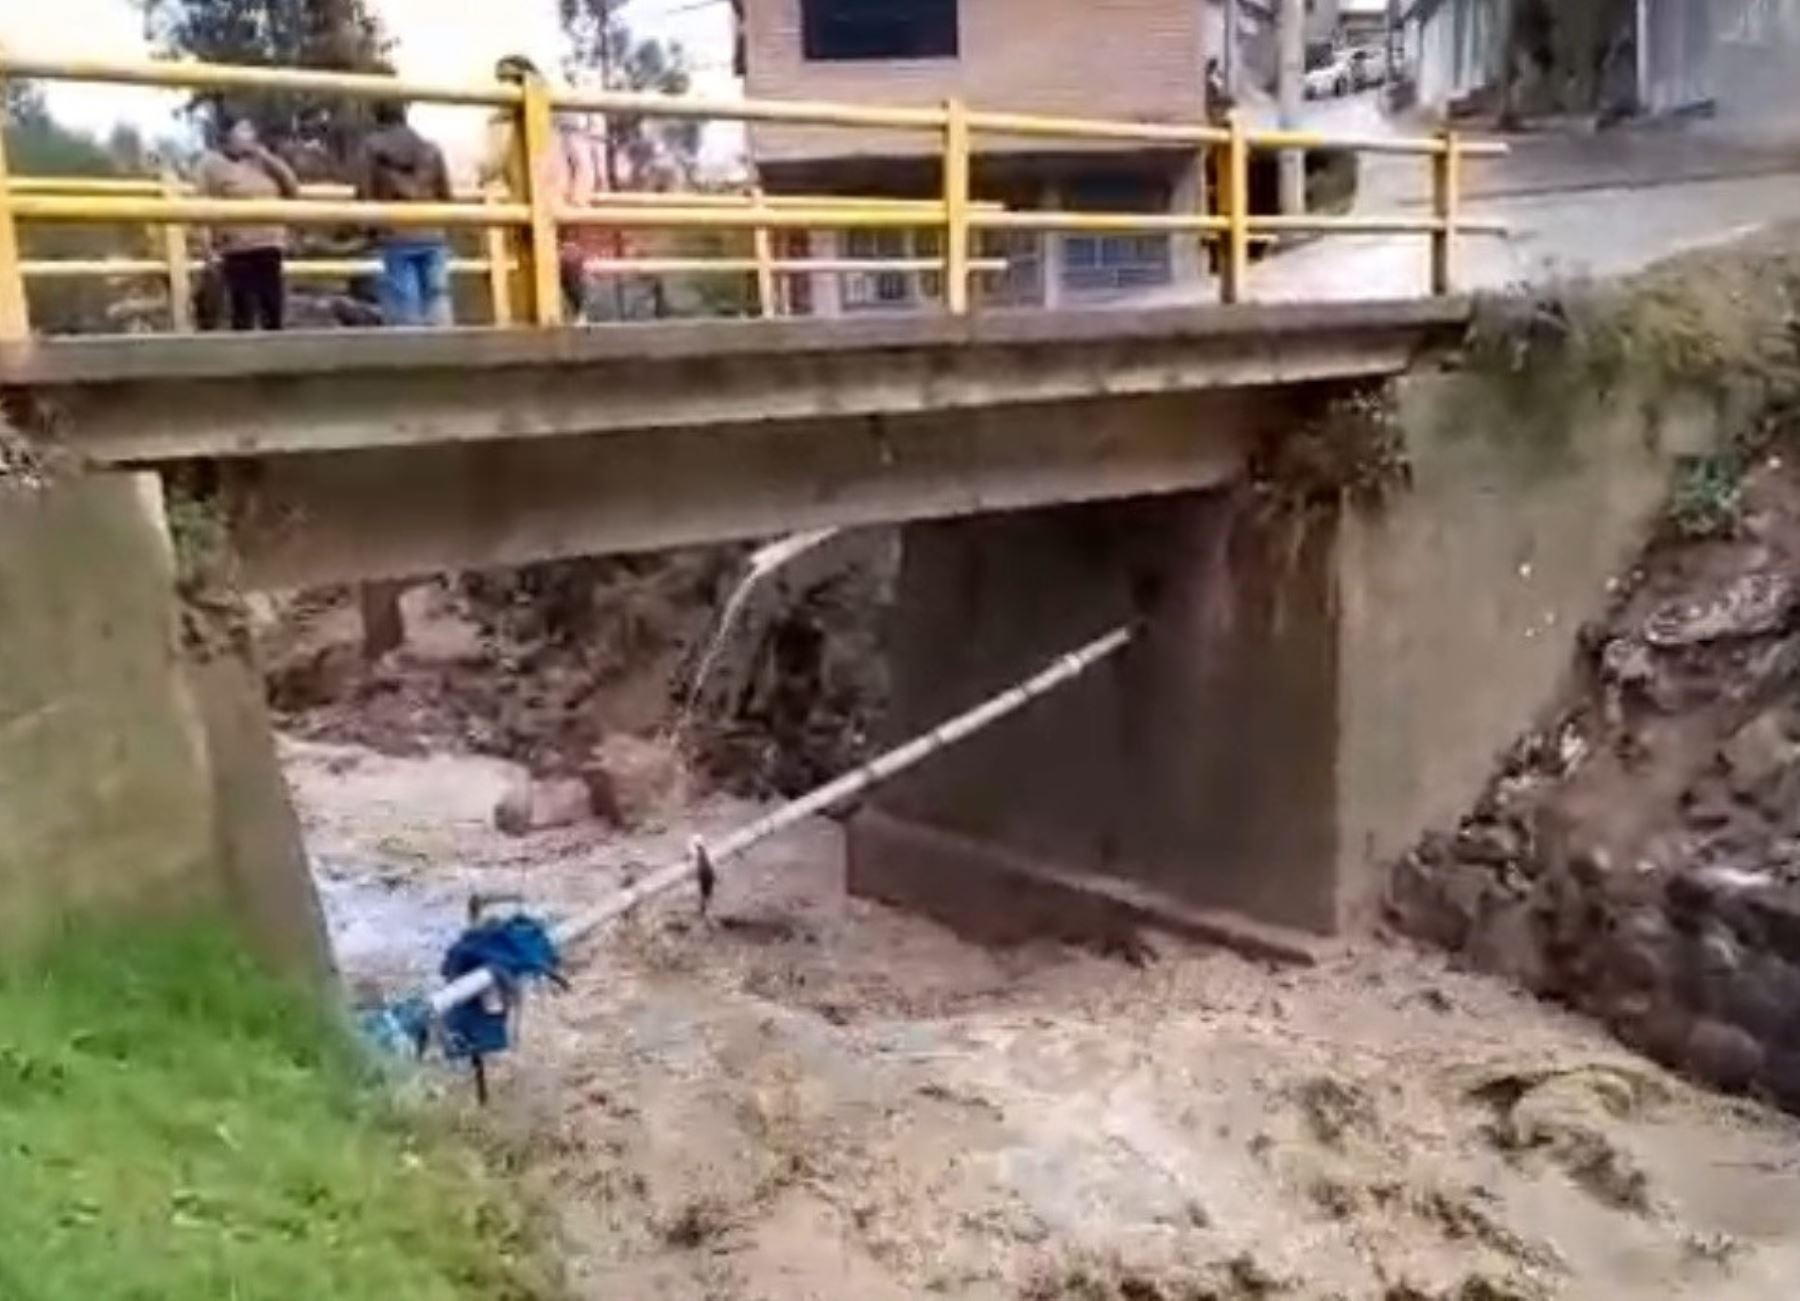 Incremento de caudal de río Urpay afecta varias viviendas y servicio de agua potable en barrio de ciudad de Huaraz, en Áncash. ANDINA/Difusión